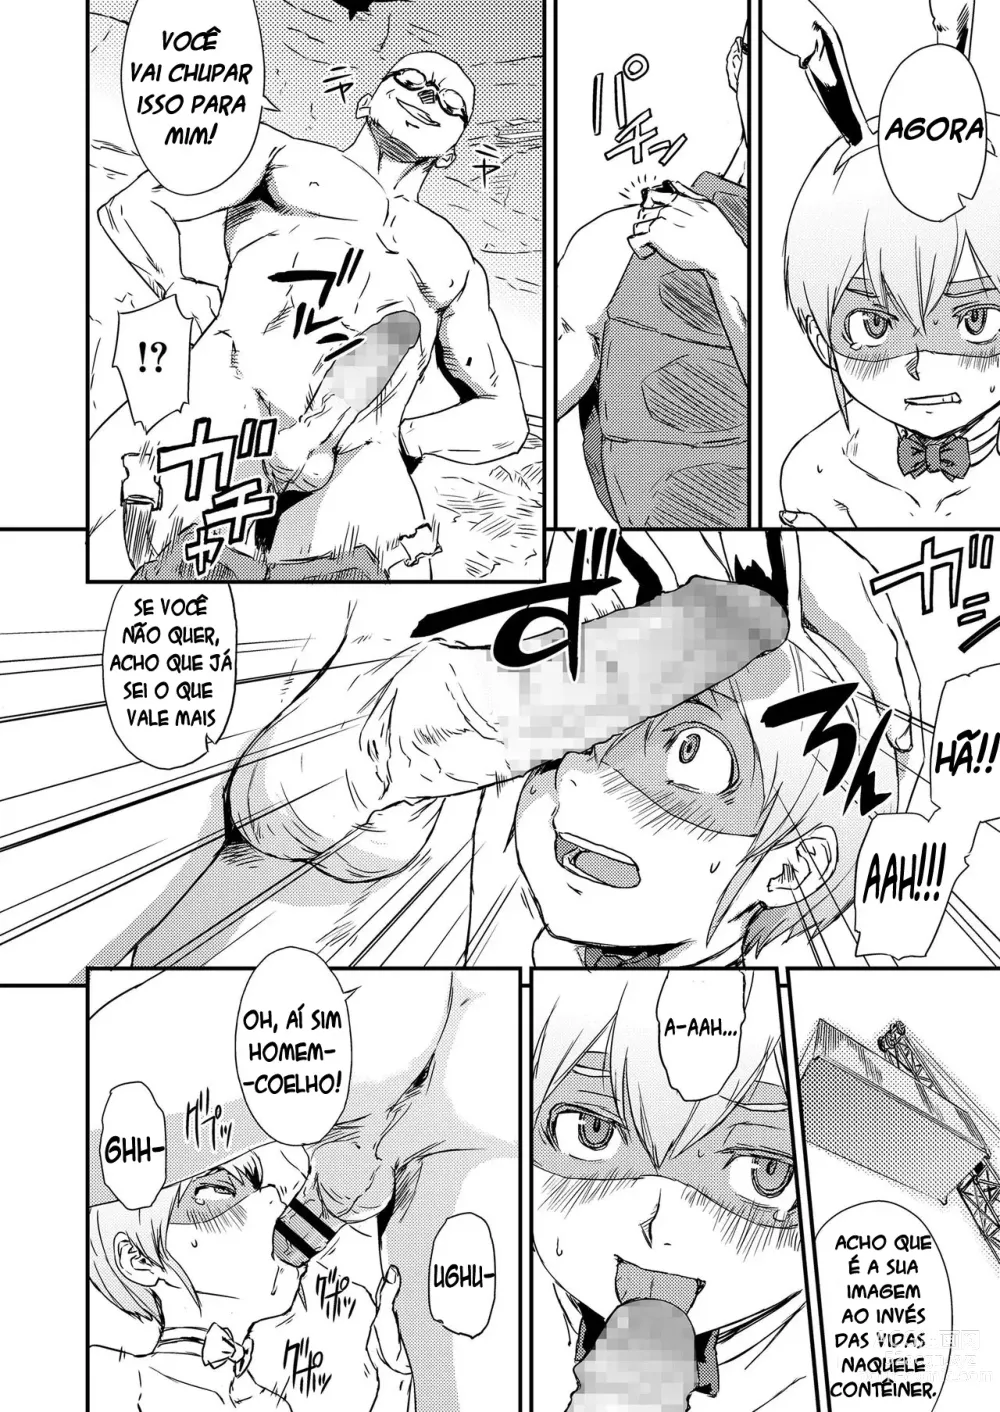 Page 6 of manga Vença! Homem-coelho